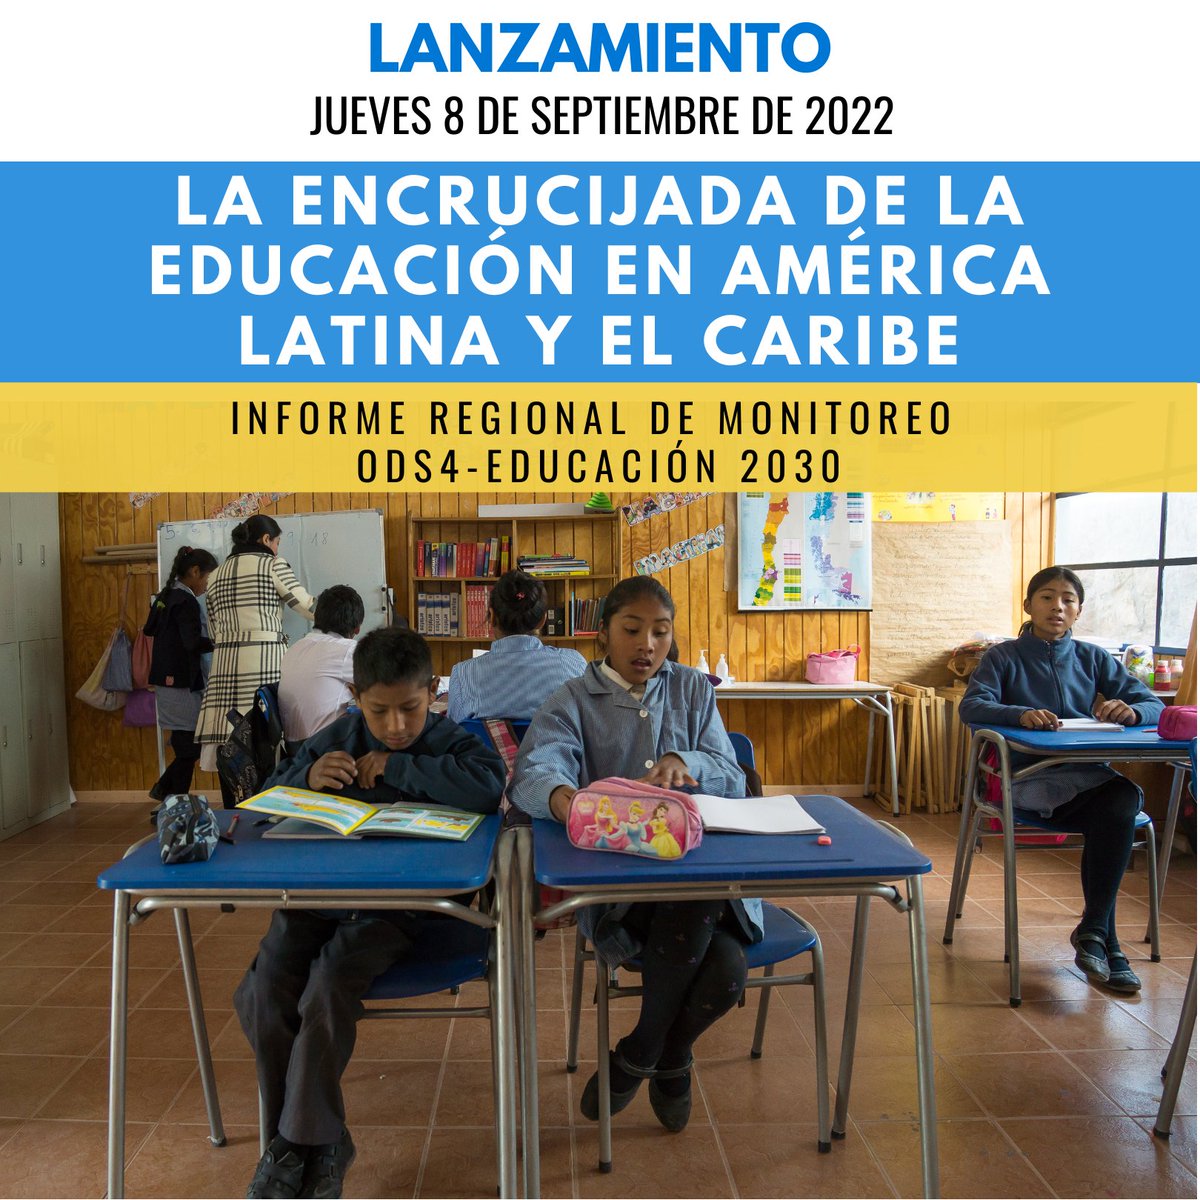 ¡ES HOY! Este jueves a las 11 h (-4 GMT) la @unescosantiago, CEPAL y UNICEF LAC analizan la encrucijada de la educación en América Latina y el Caribe a la luz de su nuevo #InformeEducación2030. ➡️Asiste al lanzamiento en línea en youtu.be/5IKX6YLQEL4 #ODS4 #Educación2030